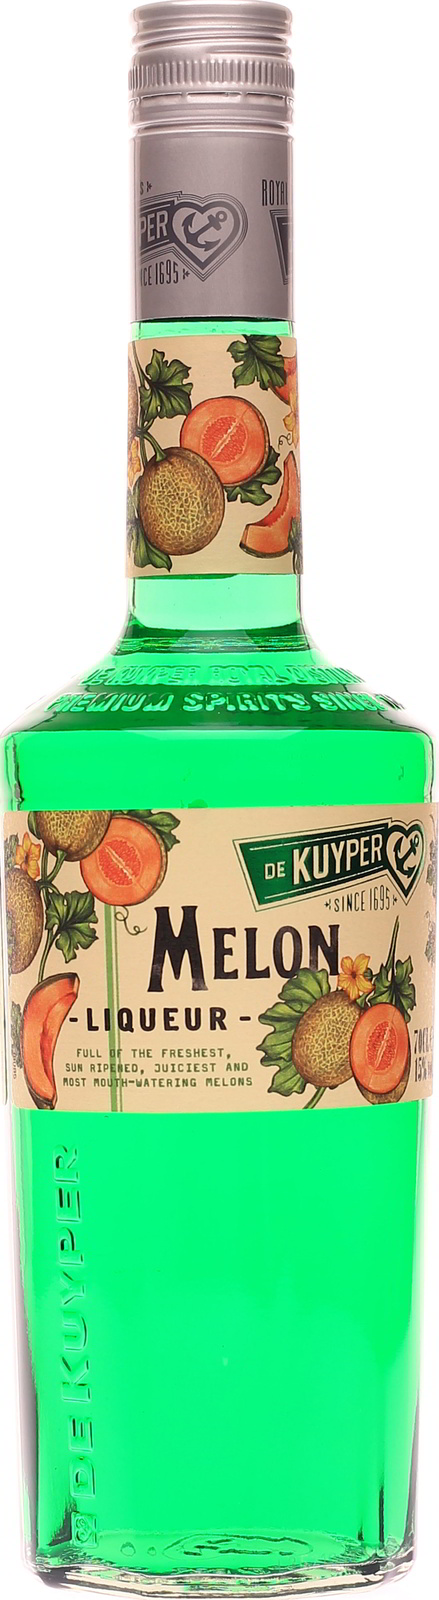 Kuyper Melonenlikör günstig De im Shop Melon,